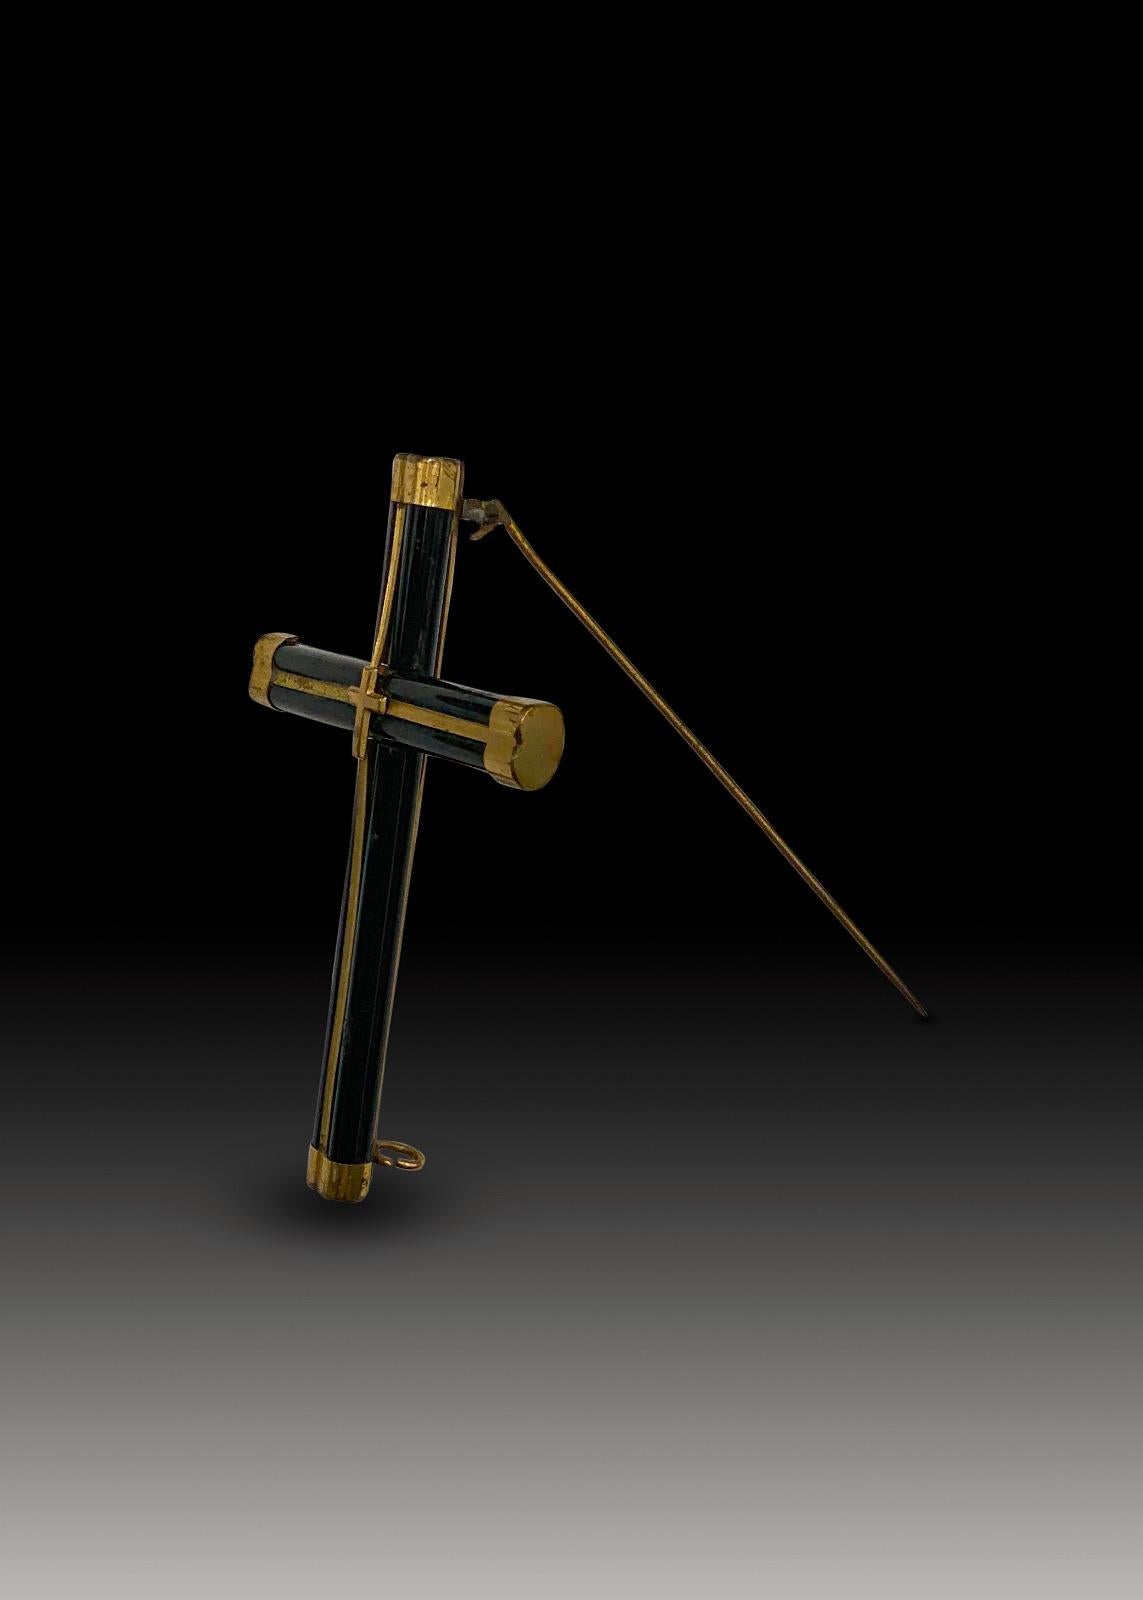 Brosche in Form eines Kreuzes xix Jahrhundert
Er ist aus Holz und goldenem Metall gefertigt. Maße: 8 x 5 cm
Guter Zustand.